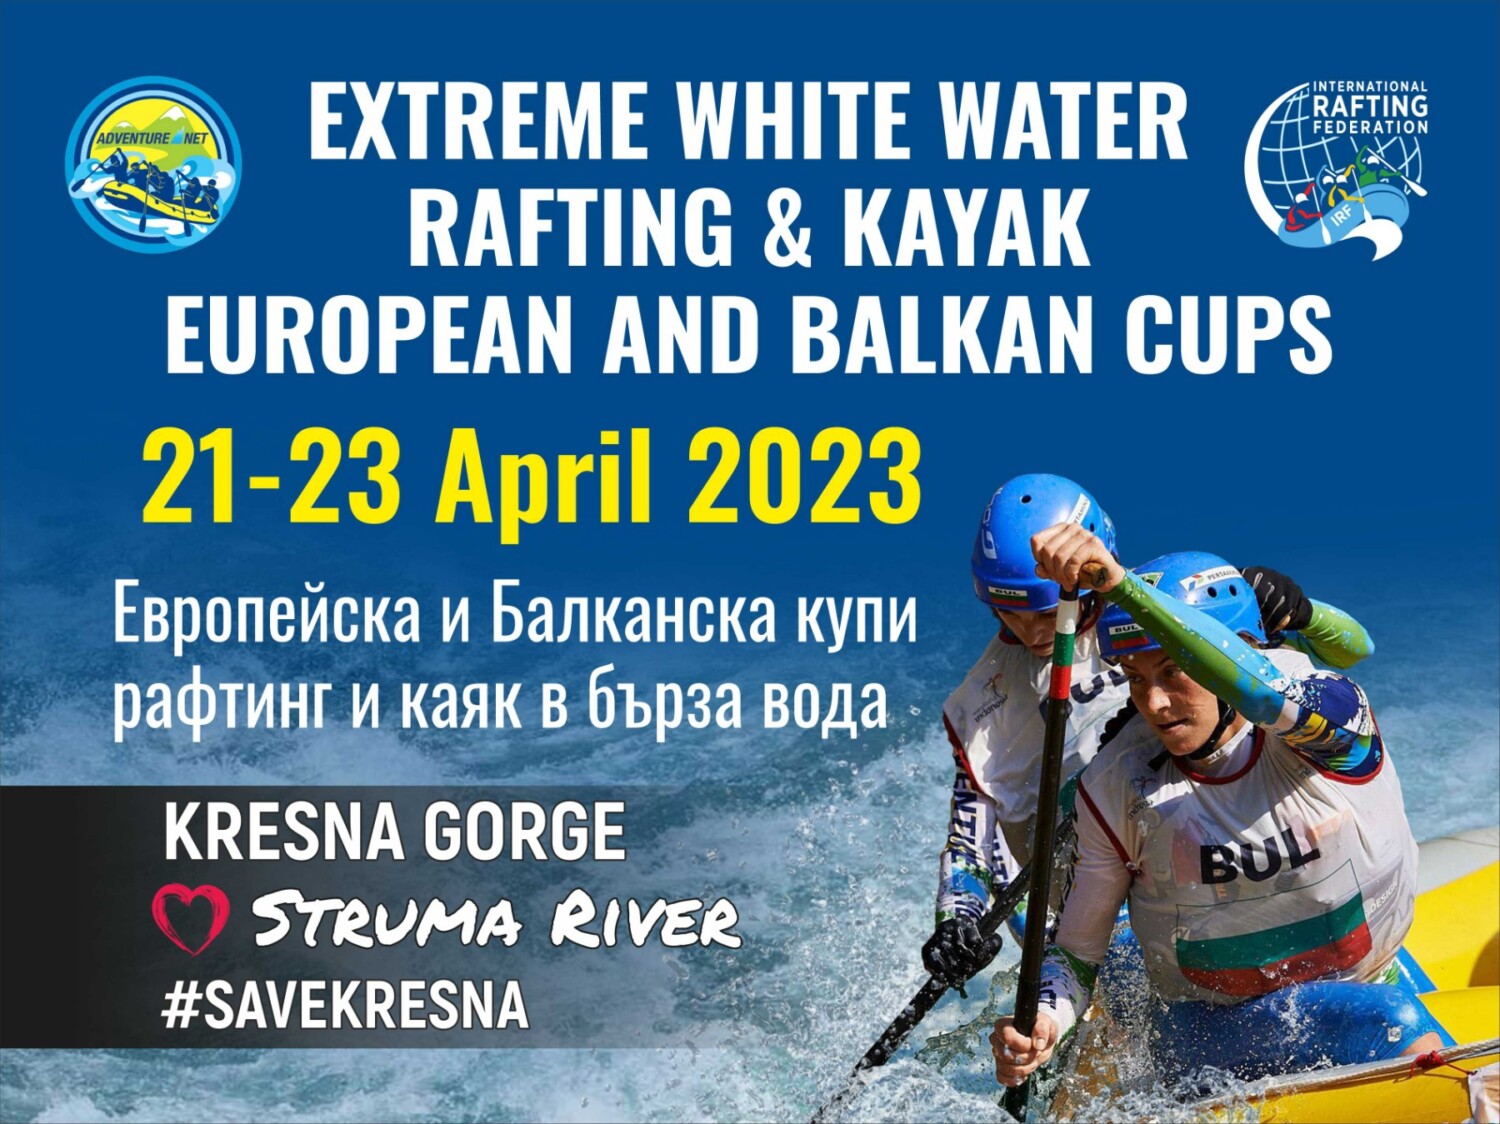 Европейска и Балканска купи рафтинг и каяк в бърза вода